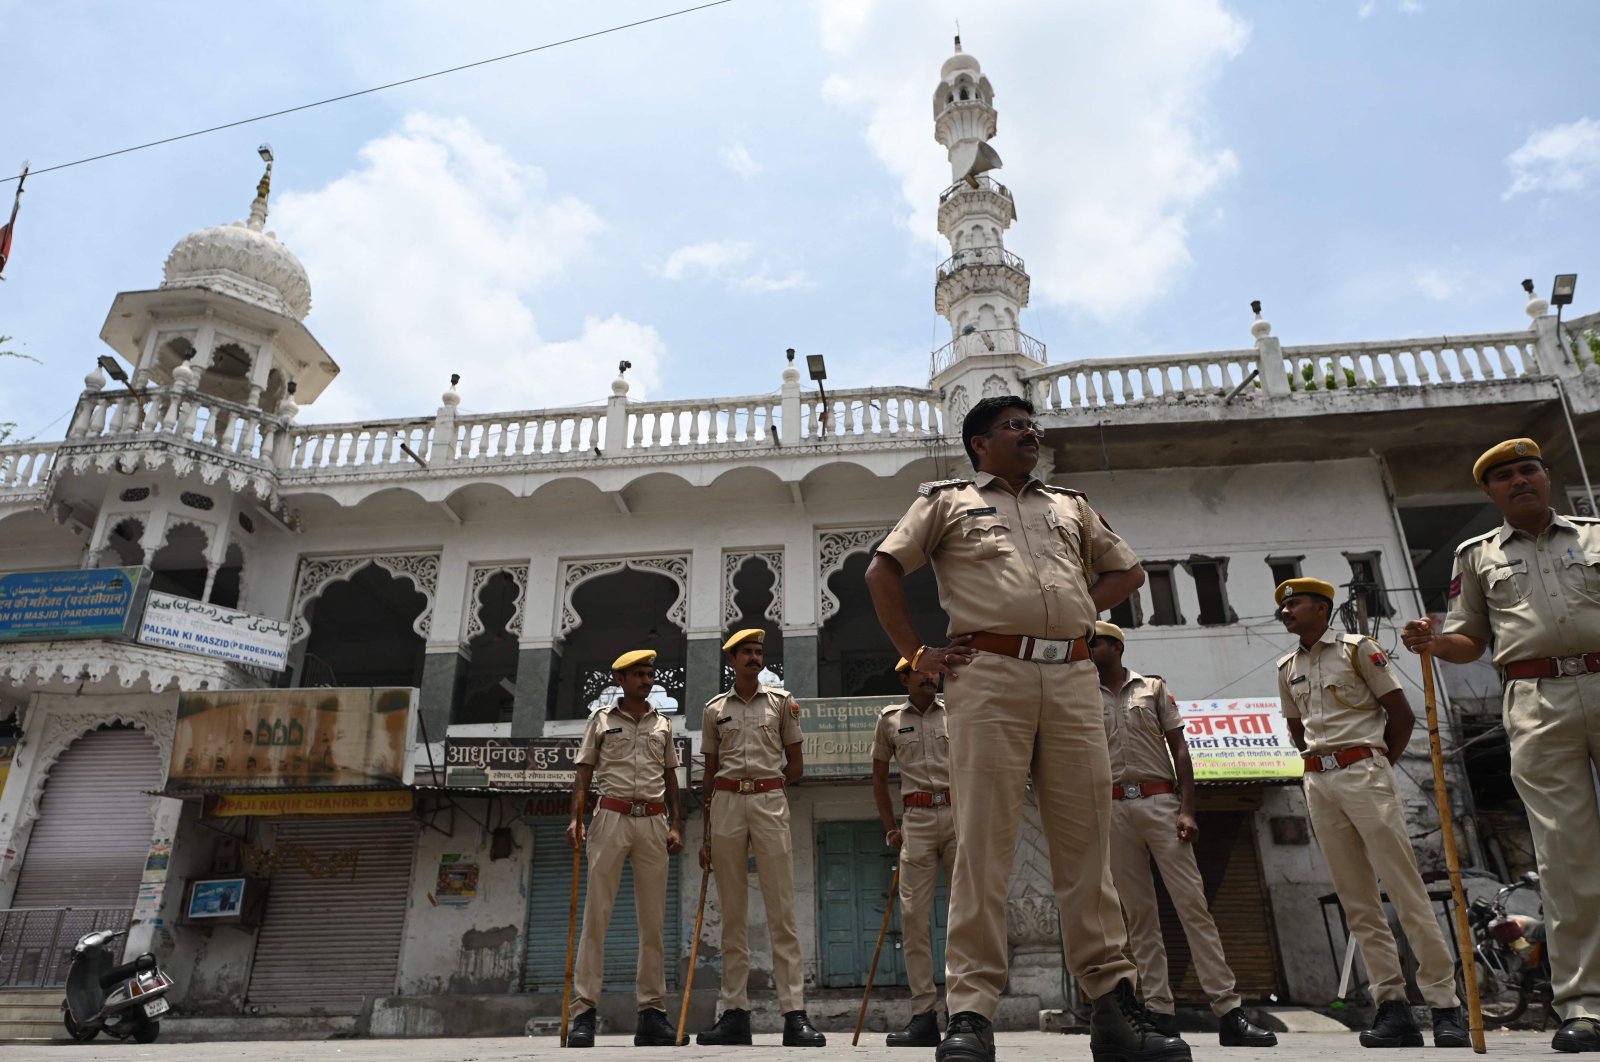 Pengadilan tinggi India mengecam spox yang memicu pertengkaran dengan pernyataan anti-Muslim